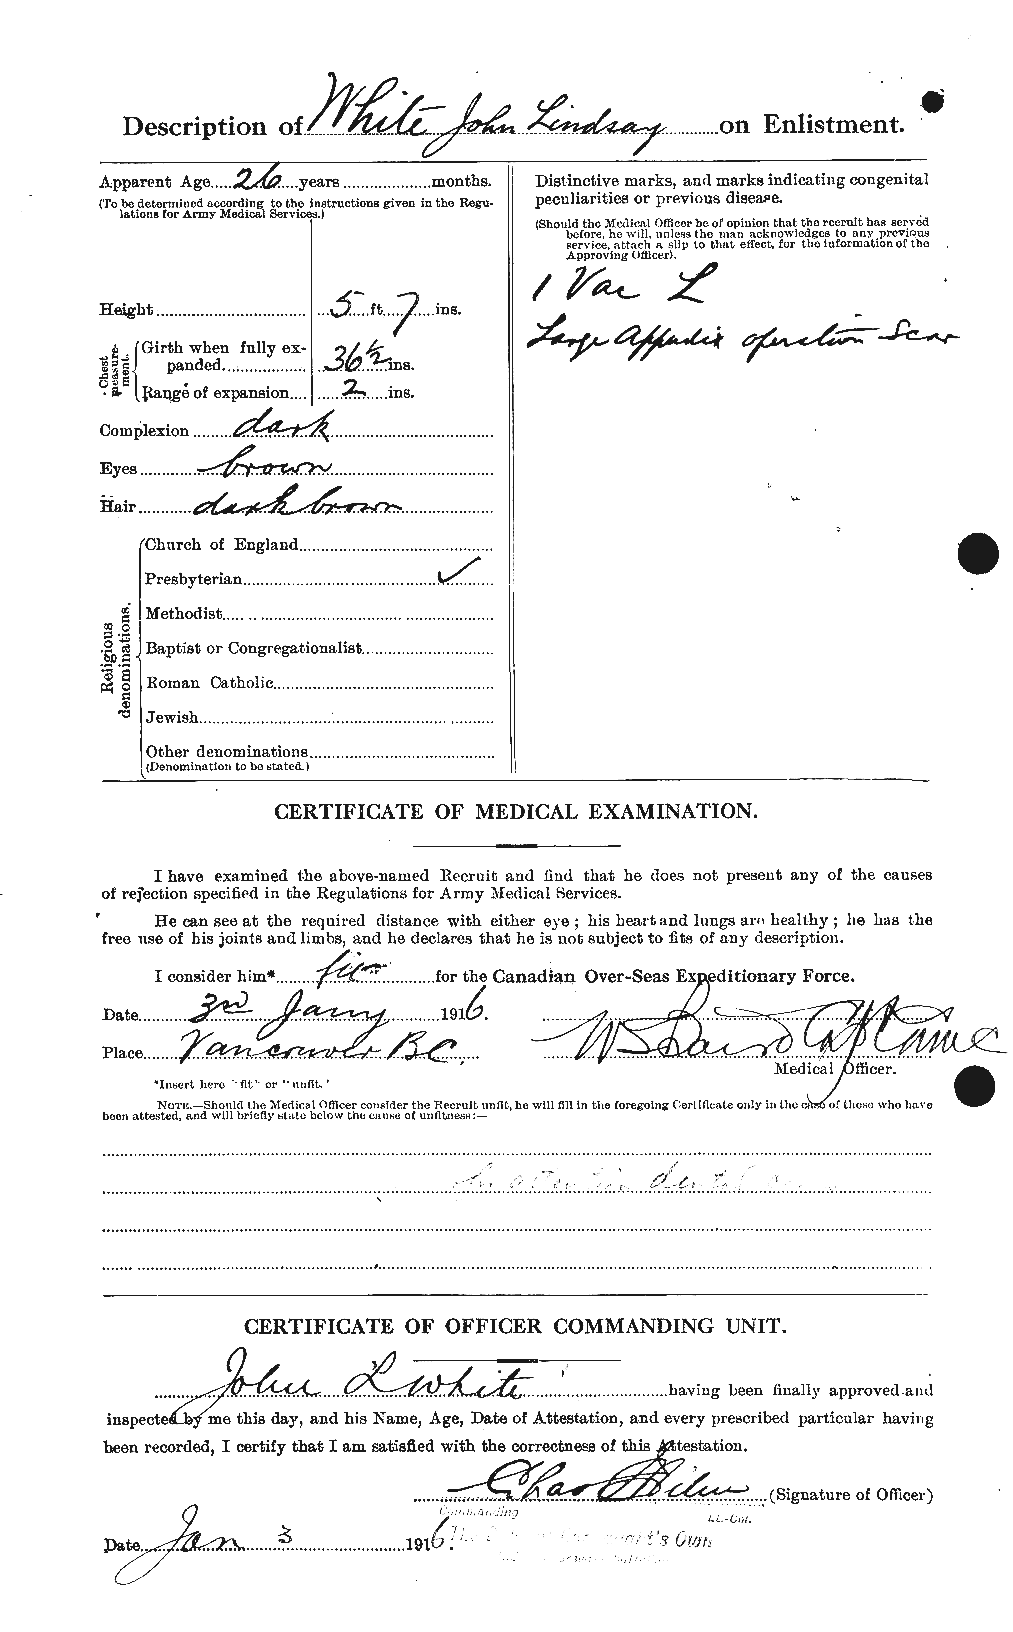 Dossiers du Personnel de la Première Guerre mondiale - CEC 671581b